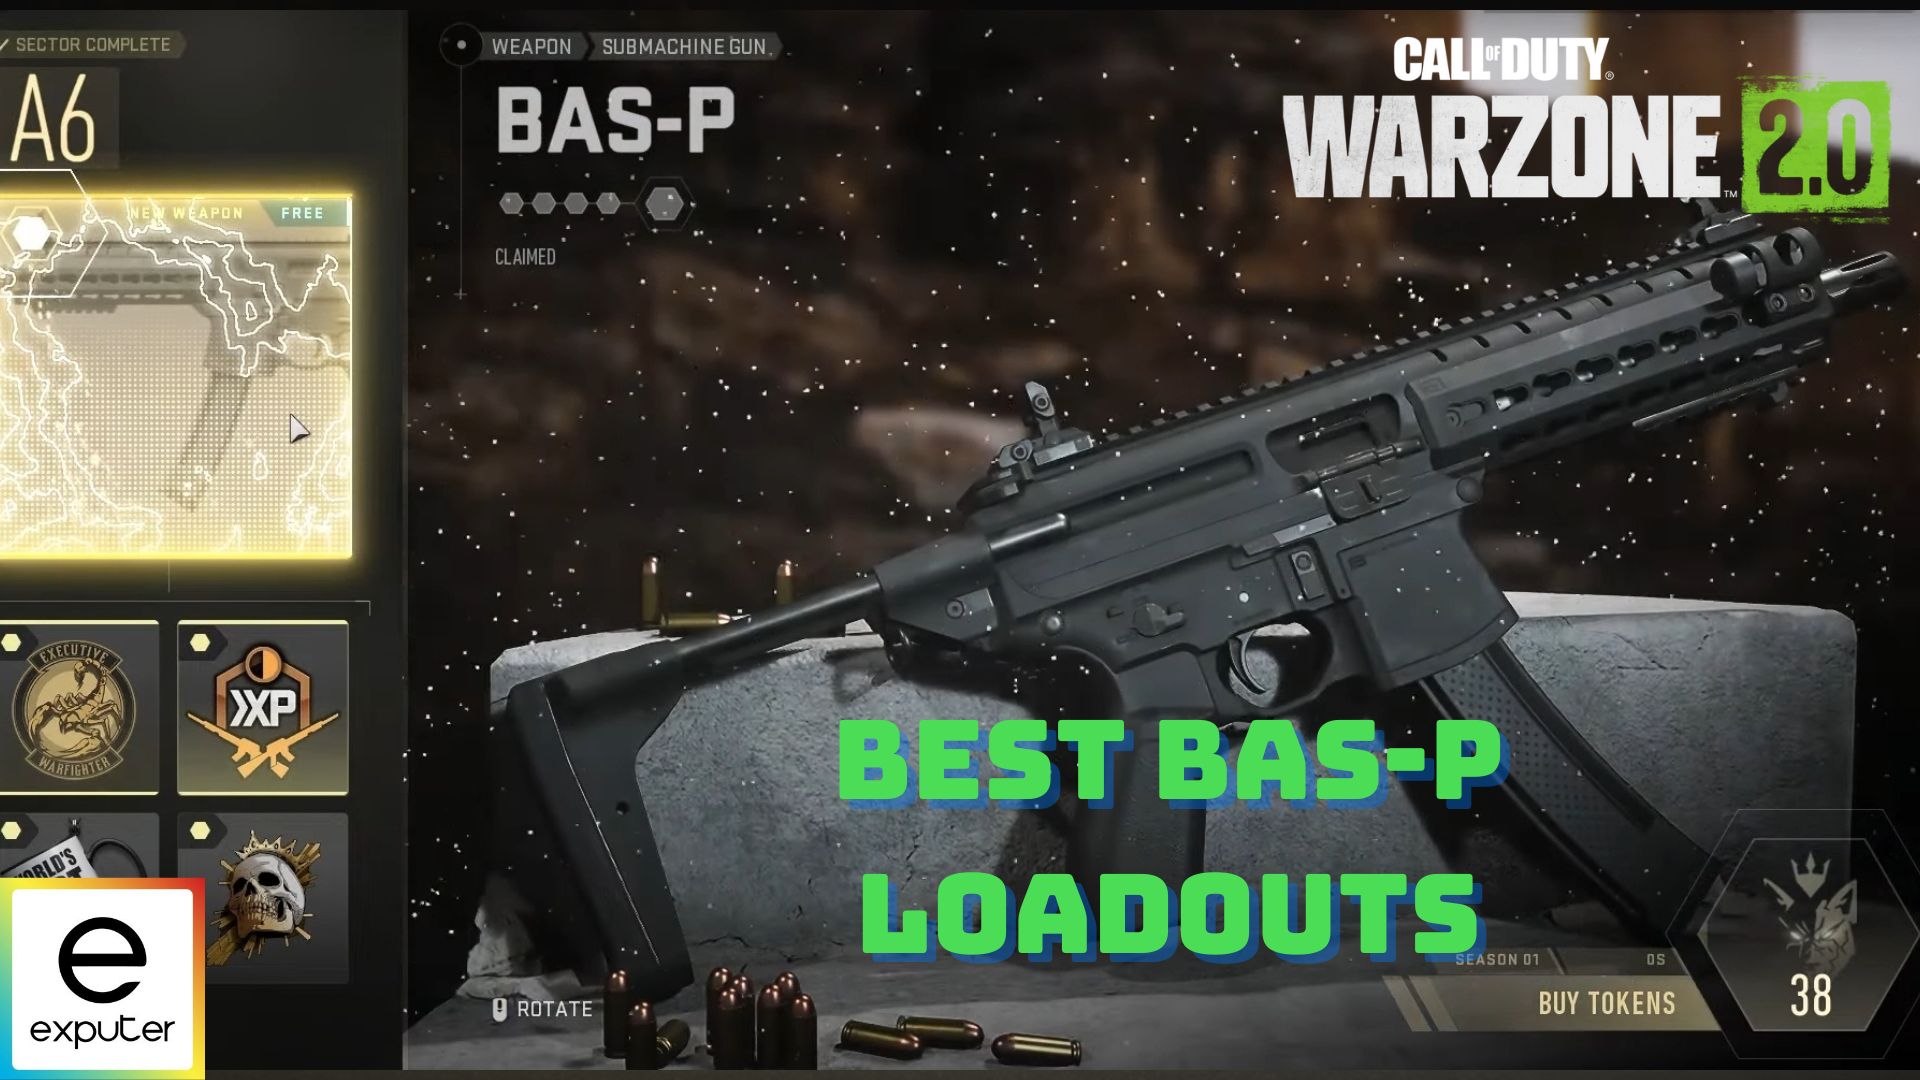 Best BAS-P Loadouts in COD Warzone 2.0